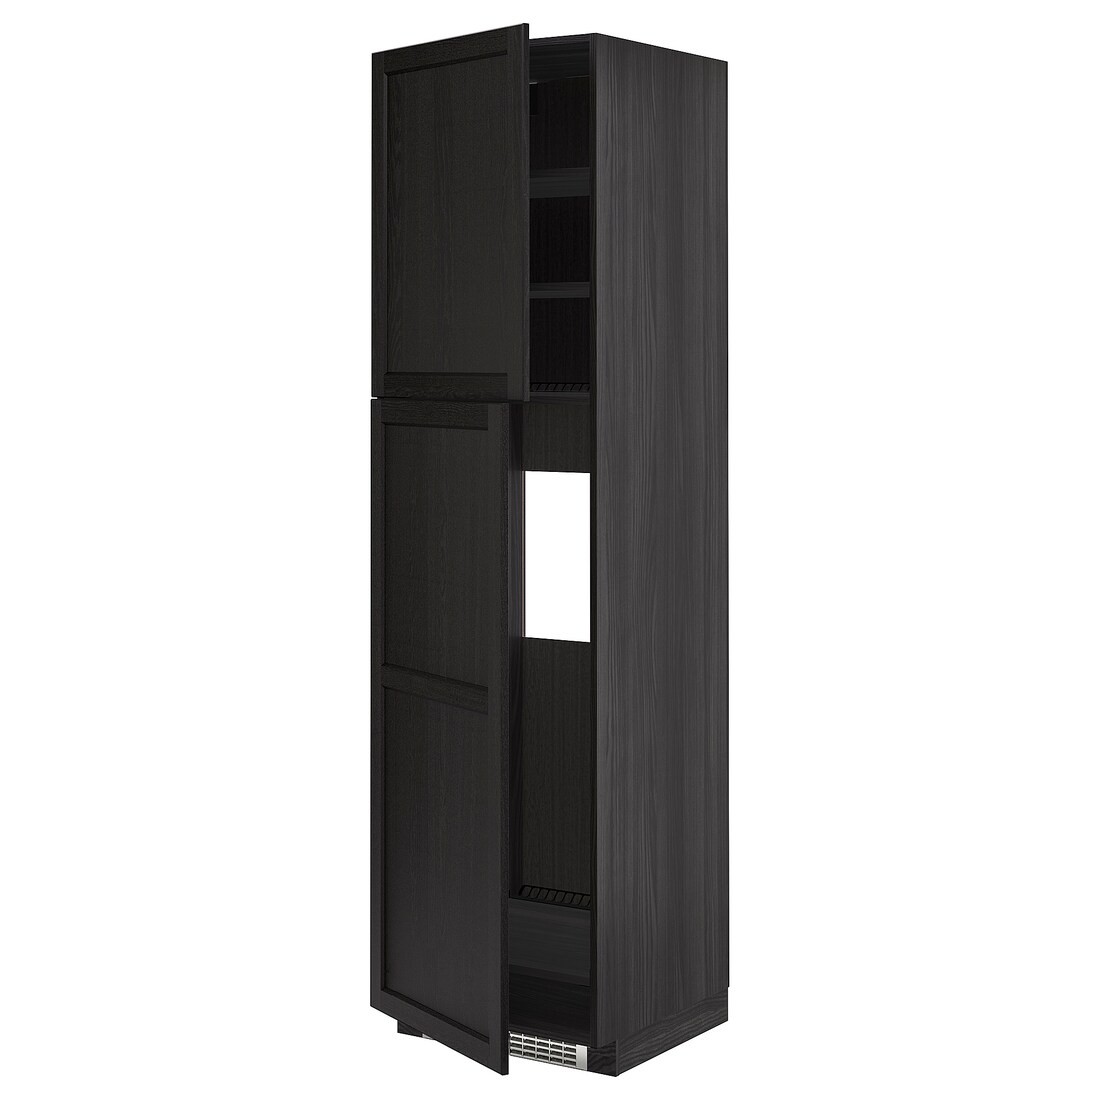 IKEA METOD МЕТОД Высокий шкаф для холодильника, черный / Lerhyttan черная морилка, 60x60x220 см 99459626 | 994.596.26